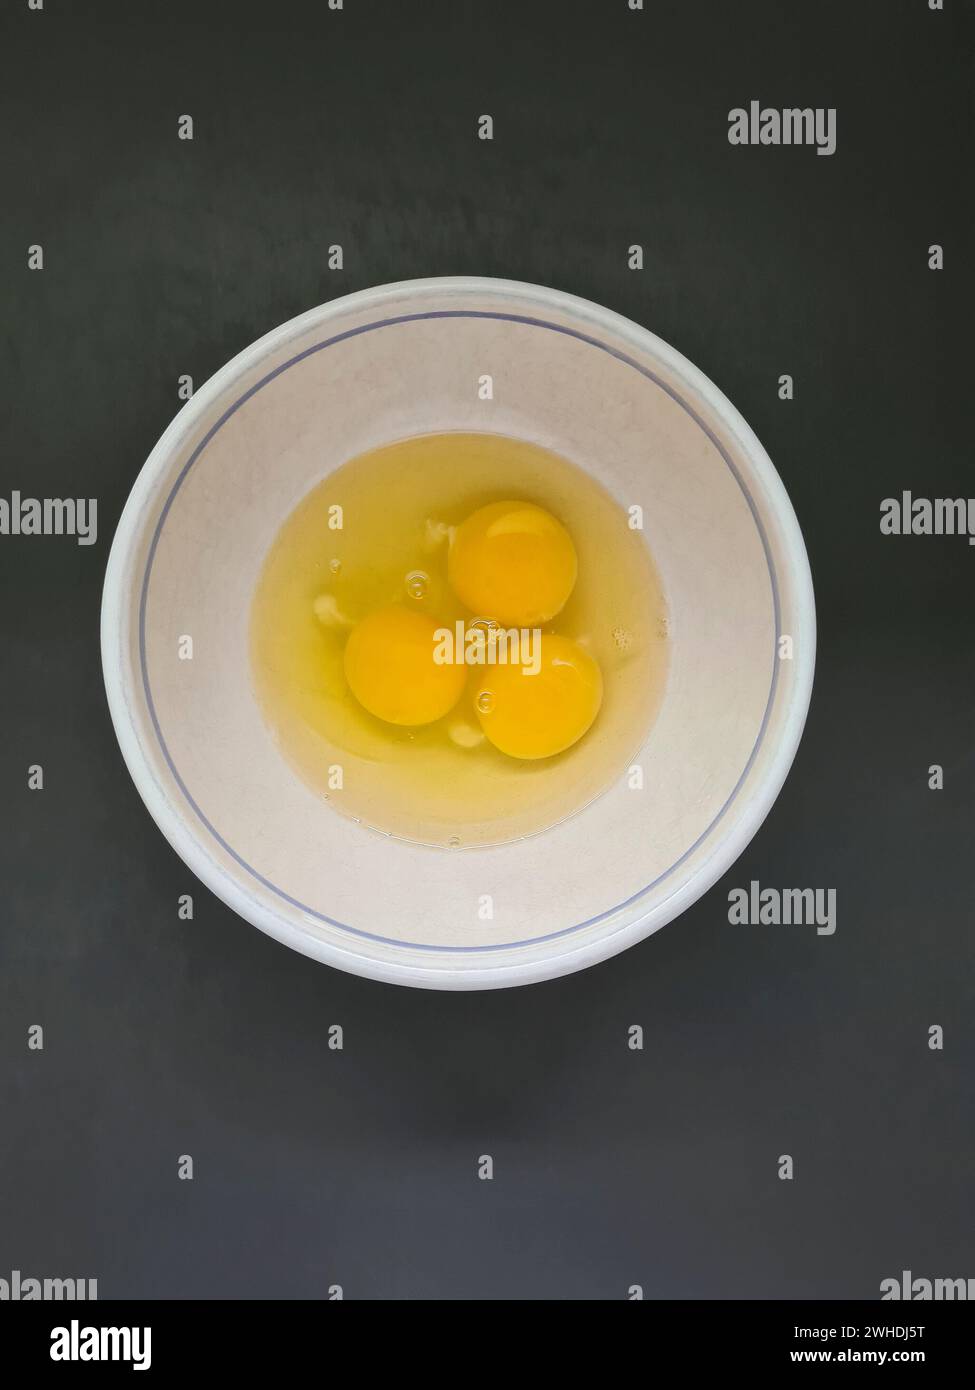 Drei verprügelte rohe Eier, Eiweiß und Eigelb in einer weißen Schüssel Stockfoto